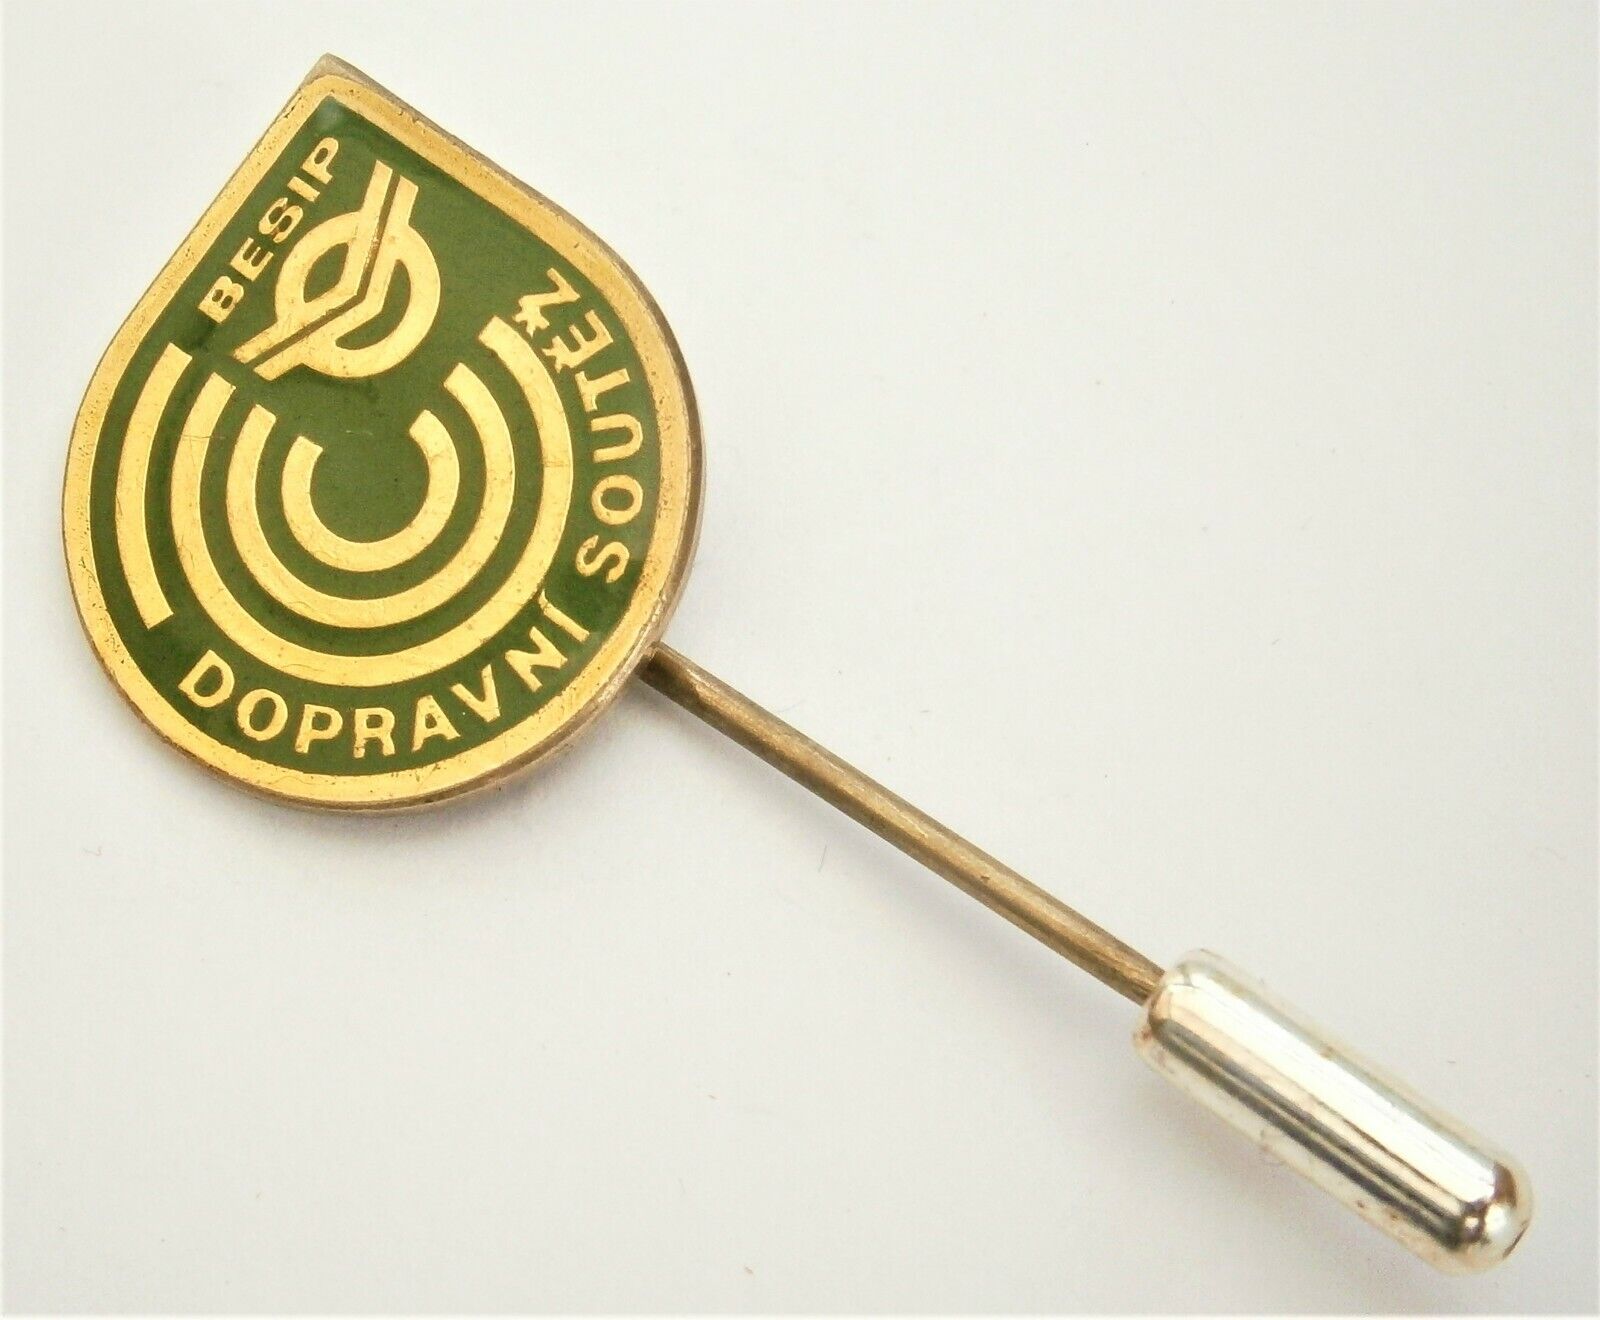 C899) Vintage Enamel Dopravni Soutez Besip Czech Bio engineering lapel pin badge